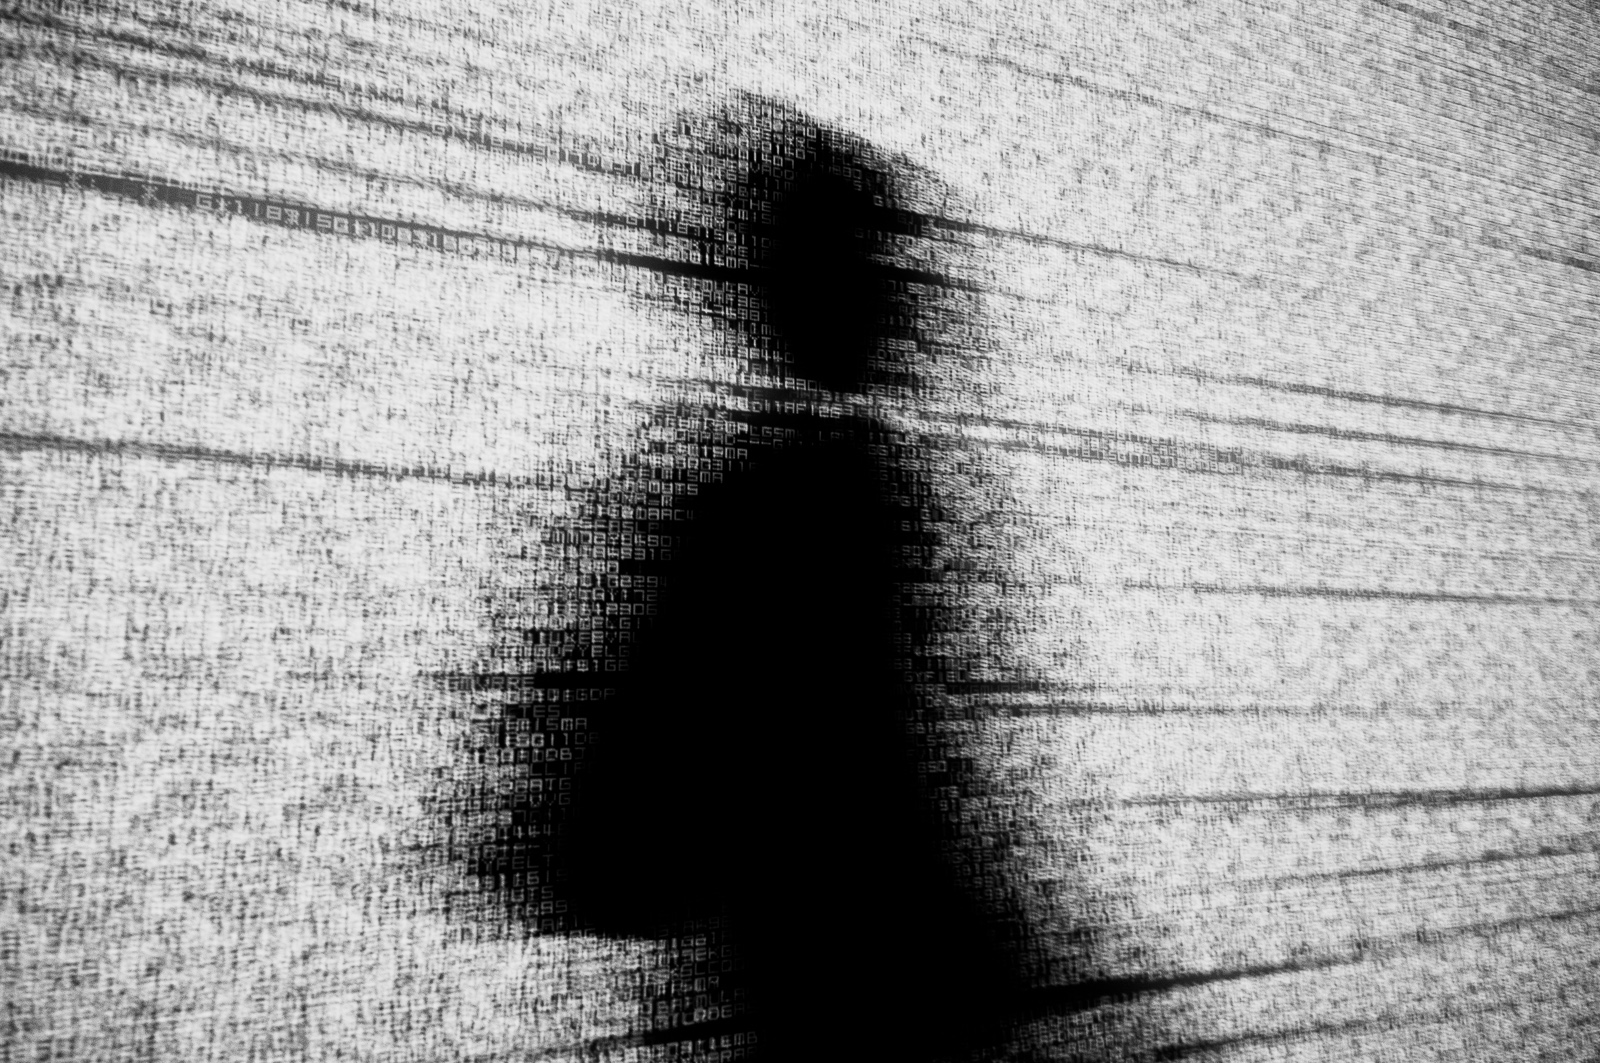 Schwarze menschliche Silhouette vor einem Hintergrund aus weissem Datenrauschen